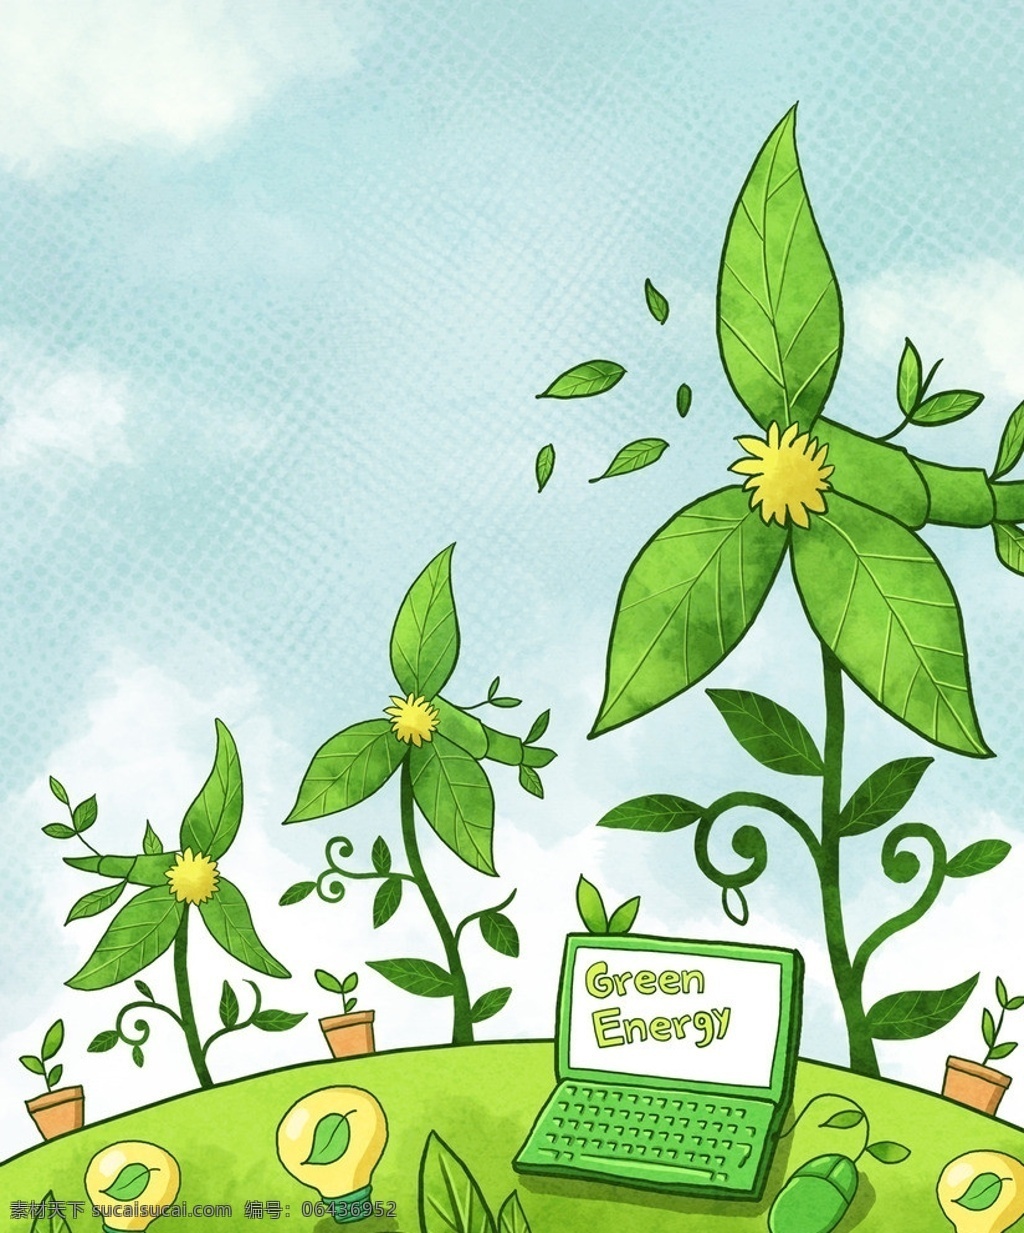 绿色环保 自然 电脑 插画 叶子 卡通 环境保护 低碳生活 节能减排 未来世界 地球 滑鼠 灯泡 花 盆栽 植物 省电 风景漫画 动漫动画 tiff